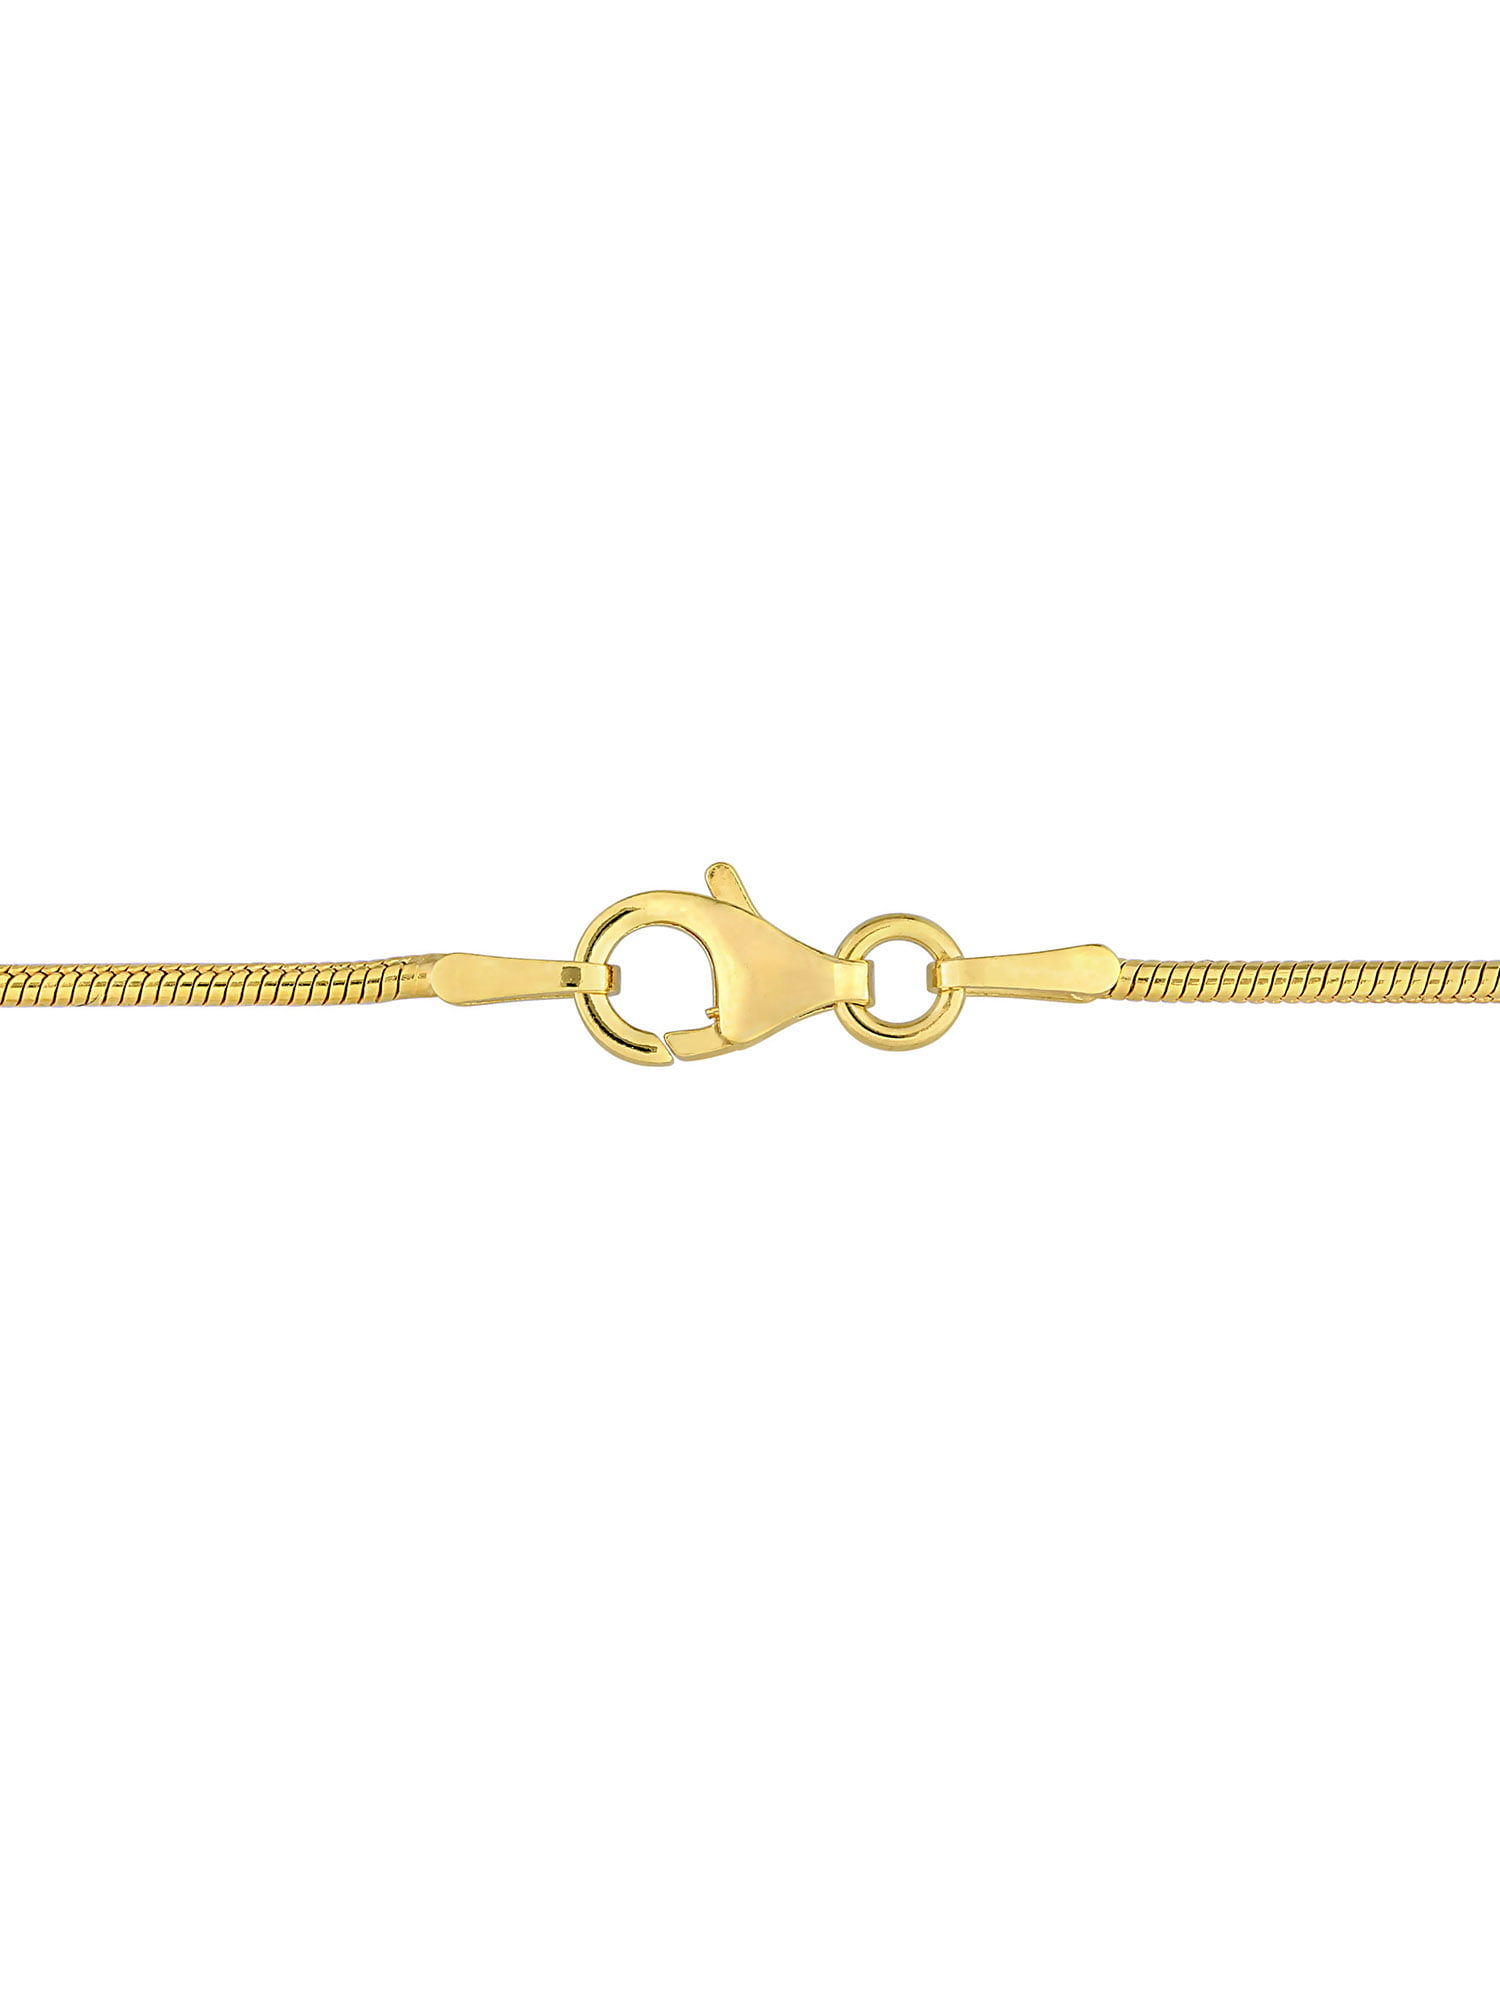 Sterling Silver Plated Snake Chain Bracelet-EMIDCHN1075SP